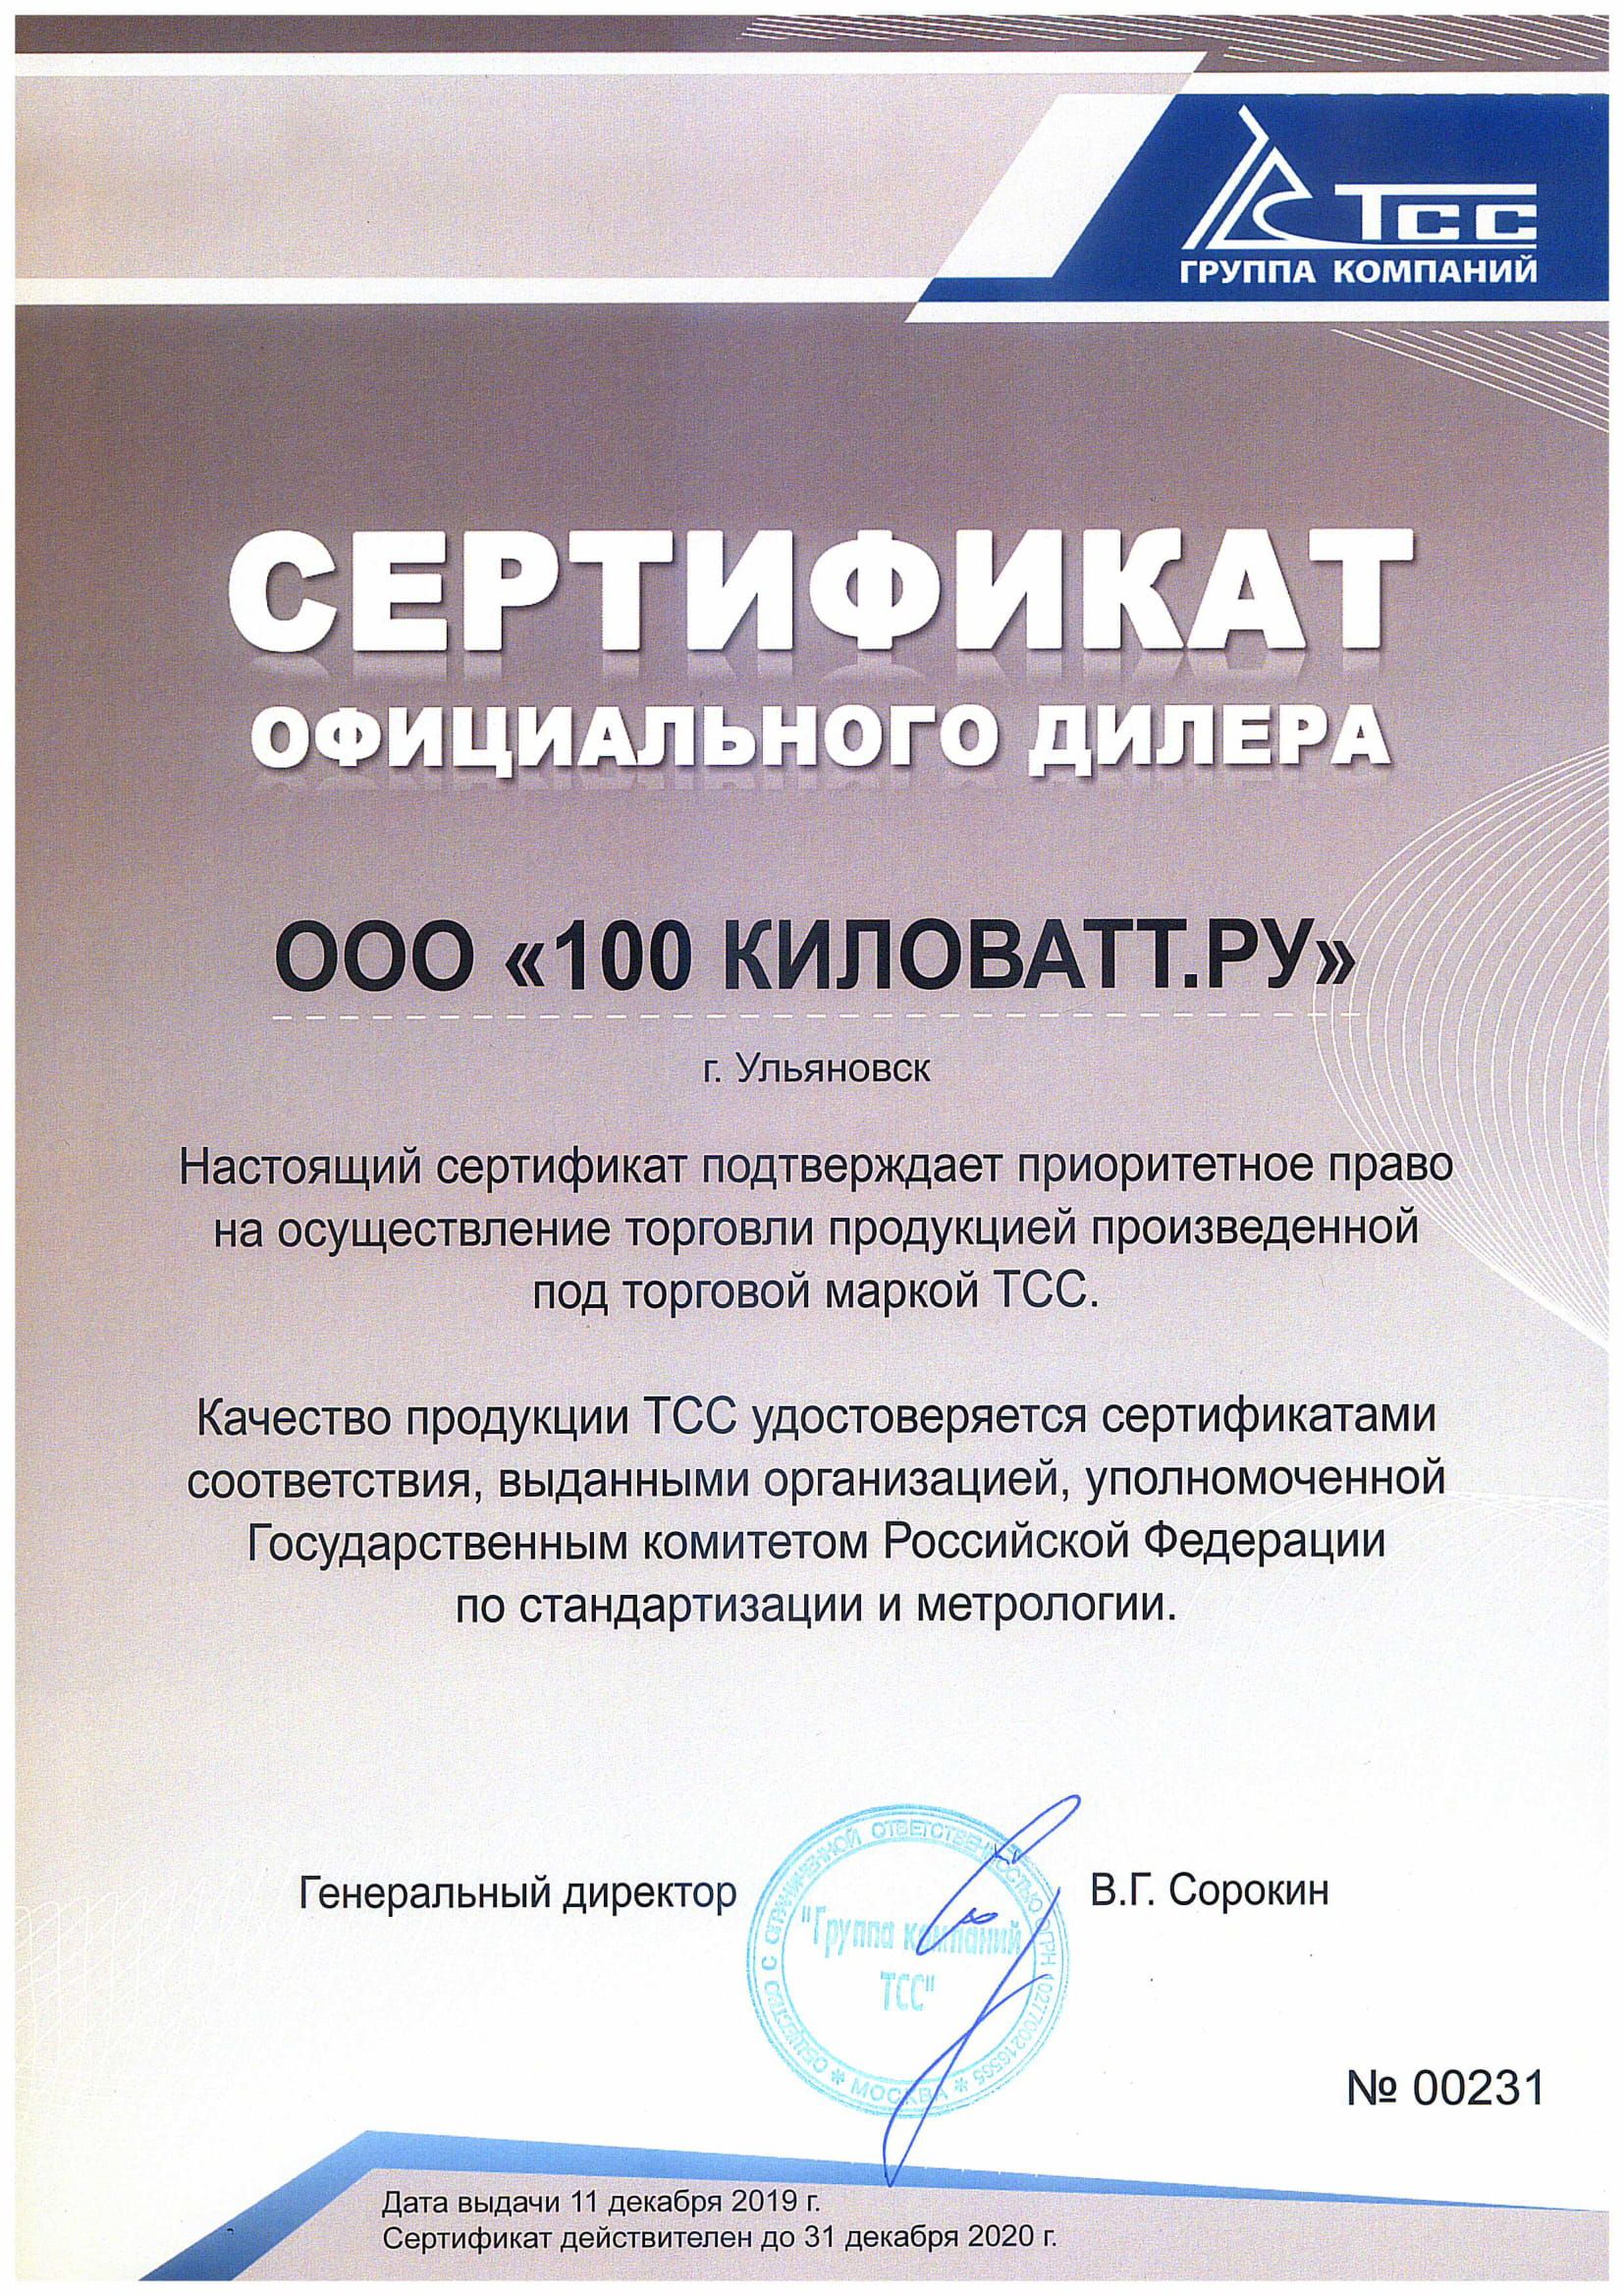 Сертификат дилера ТСС